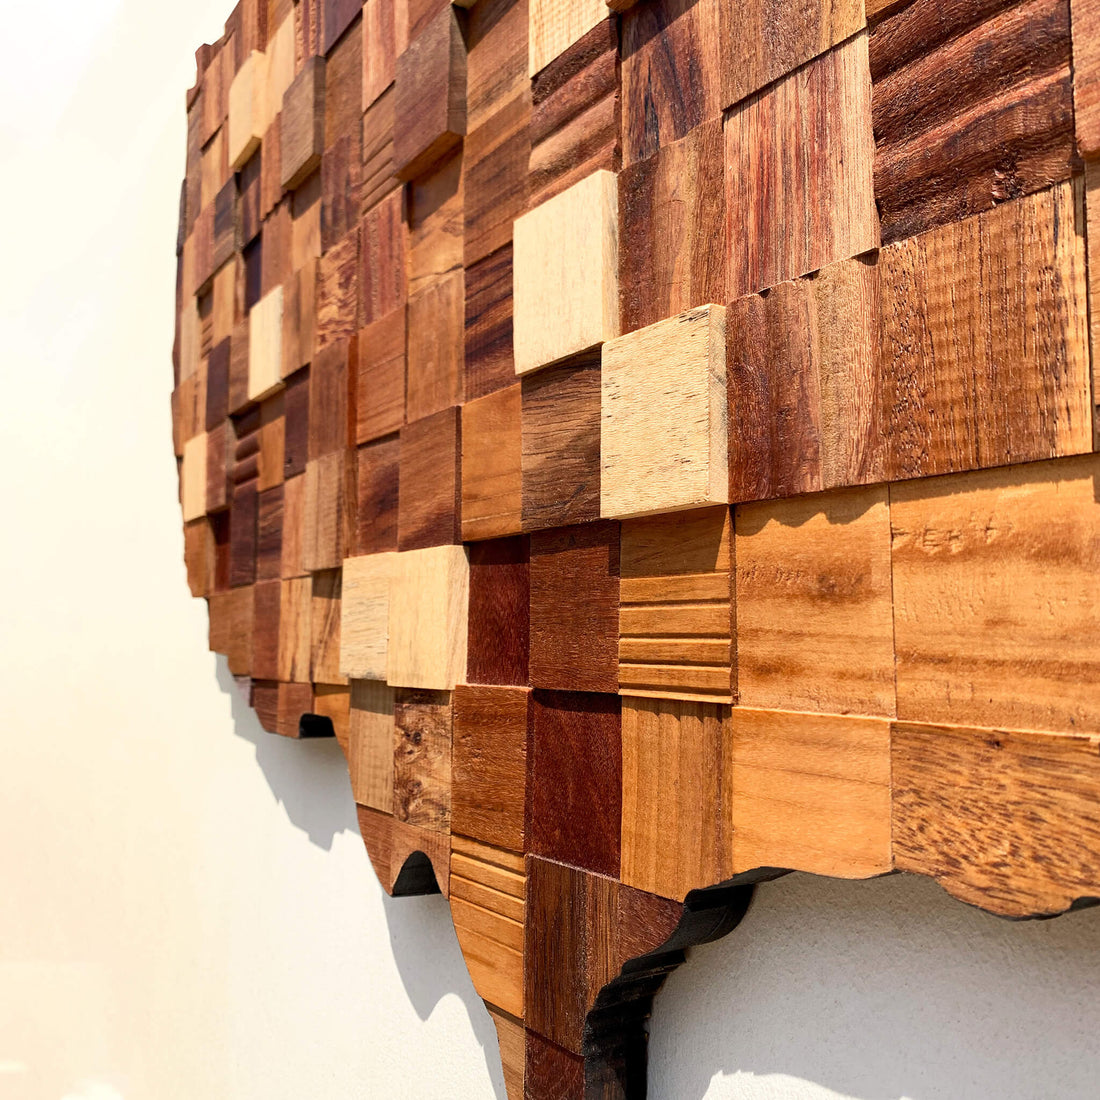 Diseño y carpintería: Un encuentro con la artesanía y la creatividad en madera peruana